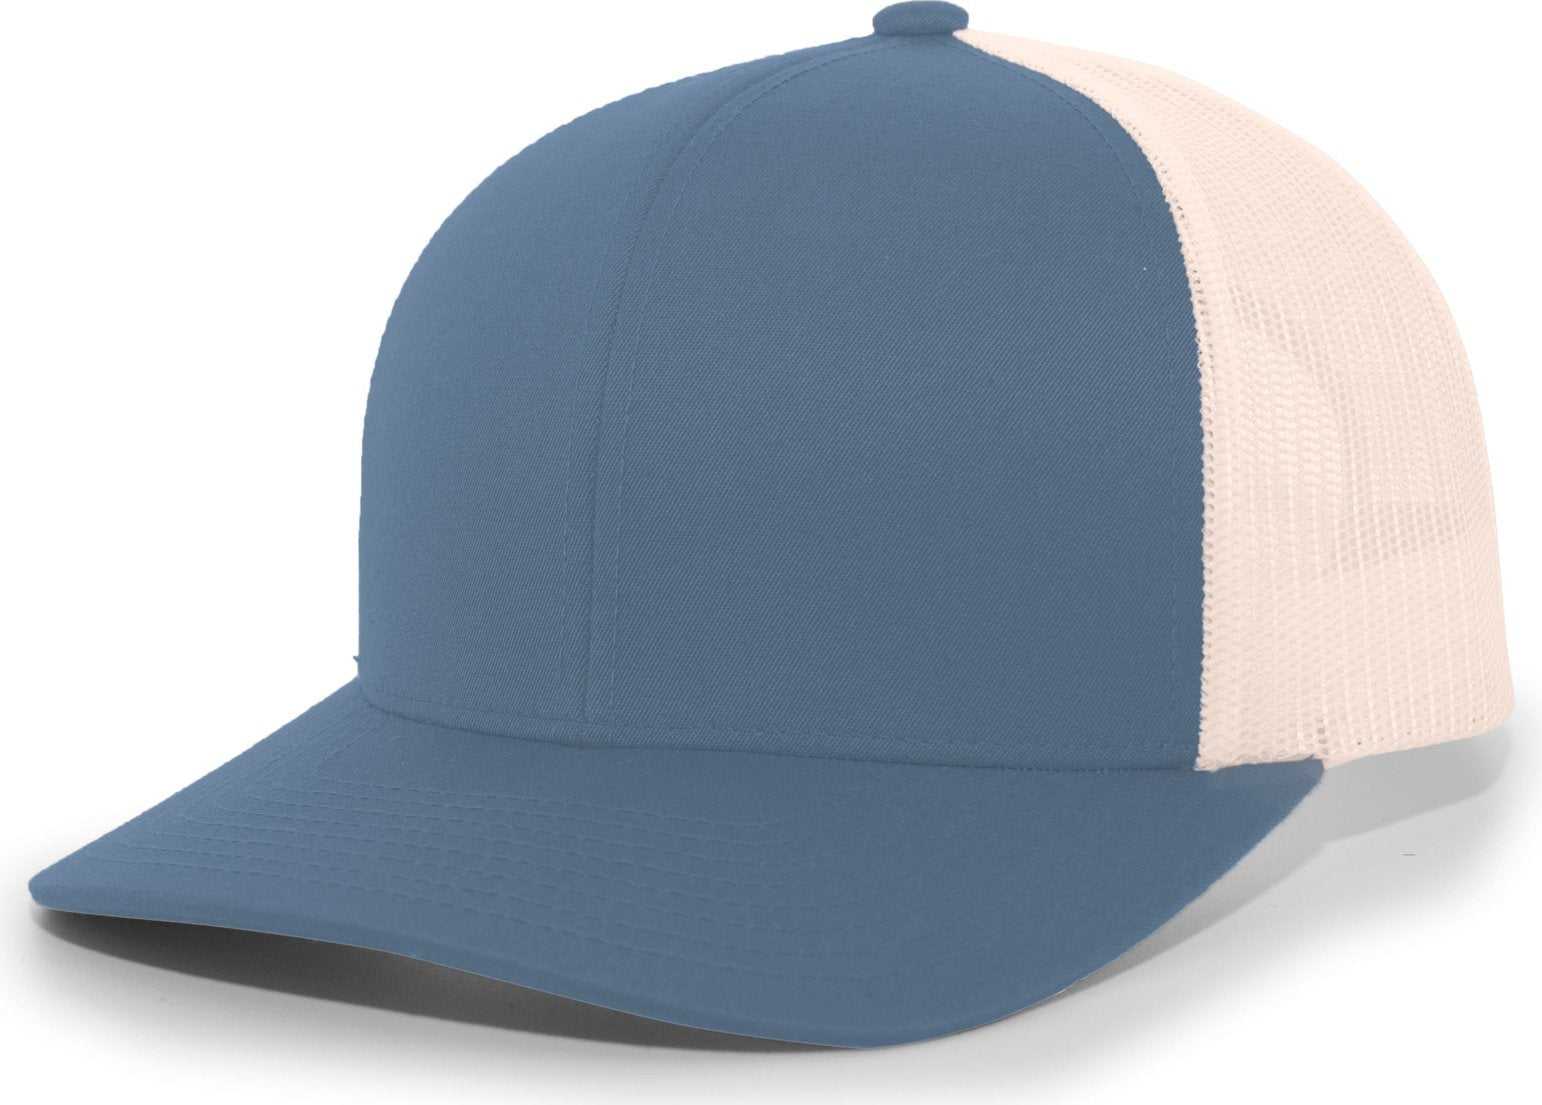 Pacific Headwear 104C Trucker Snapback Cap - Ocean Blue Beige - HIT a Double